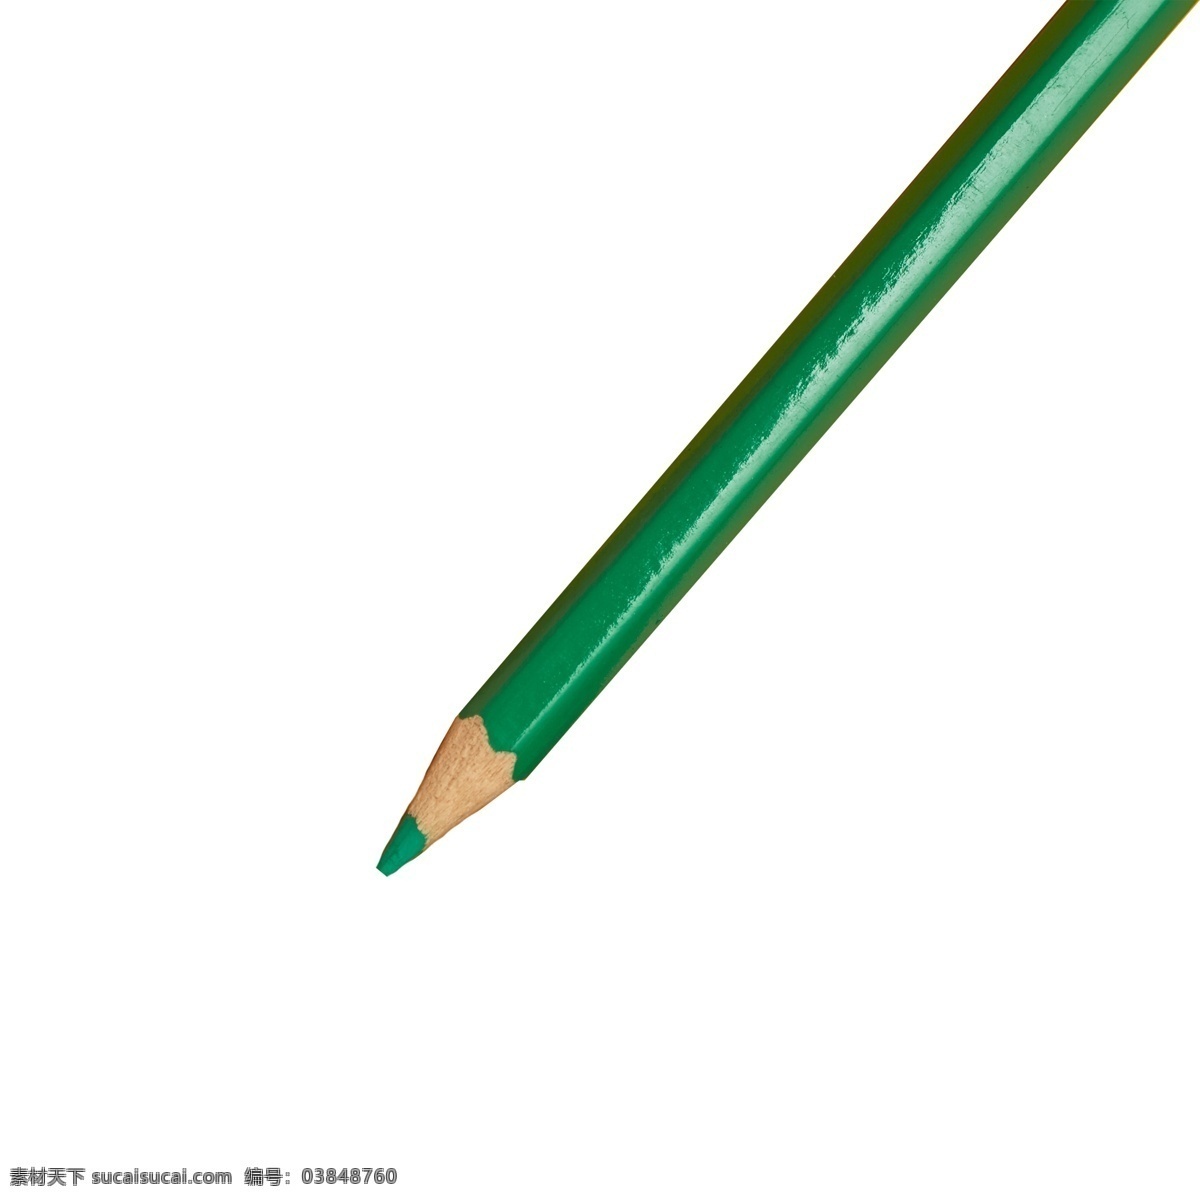 绿色彩笔 铅笔 水彩笔 画笔 实物 实物免扣 实物下载